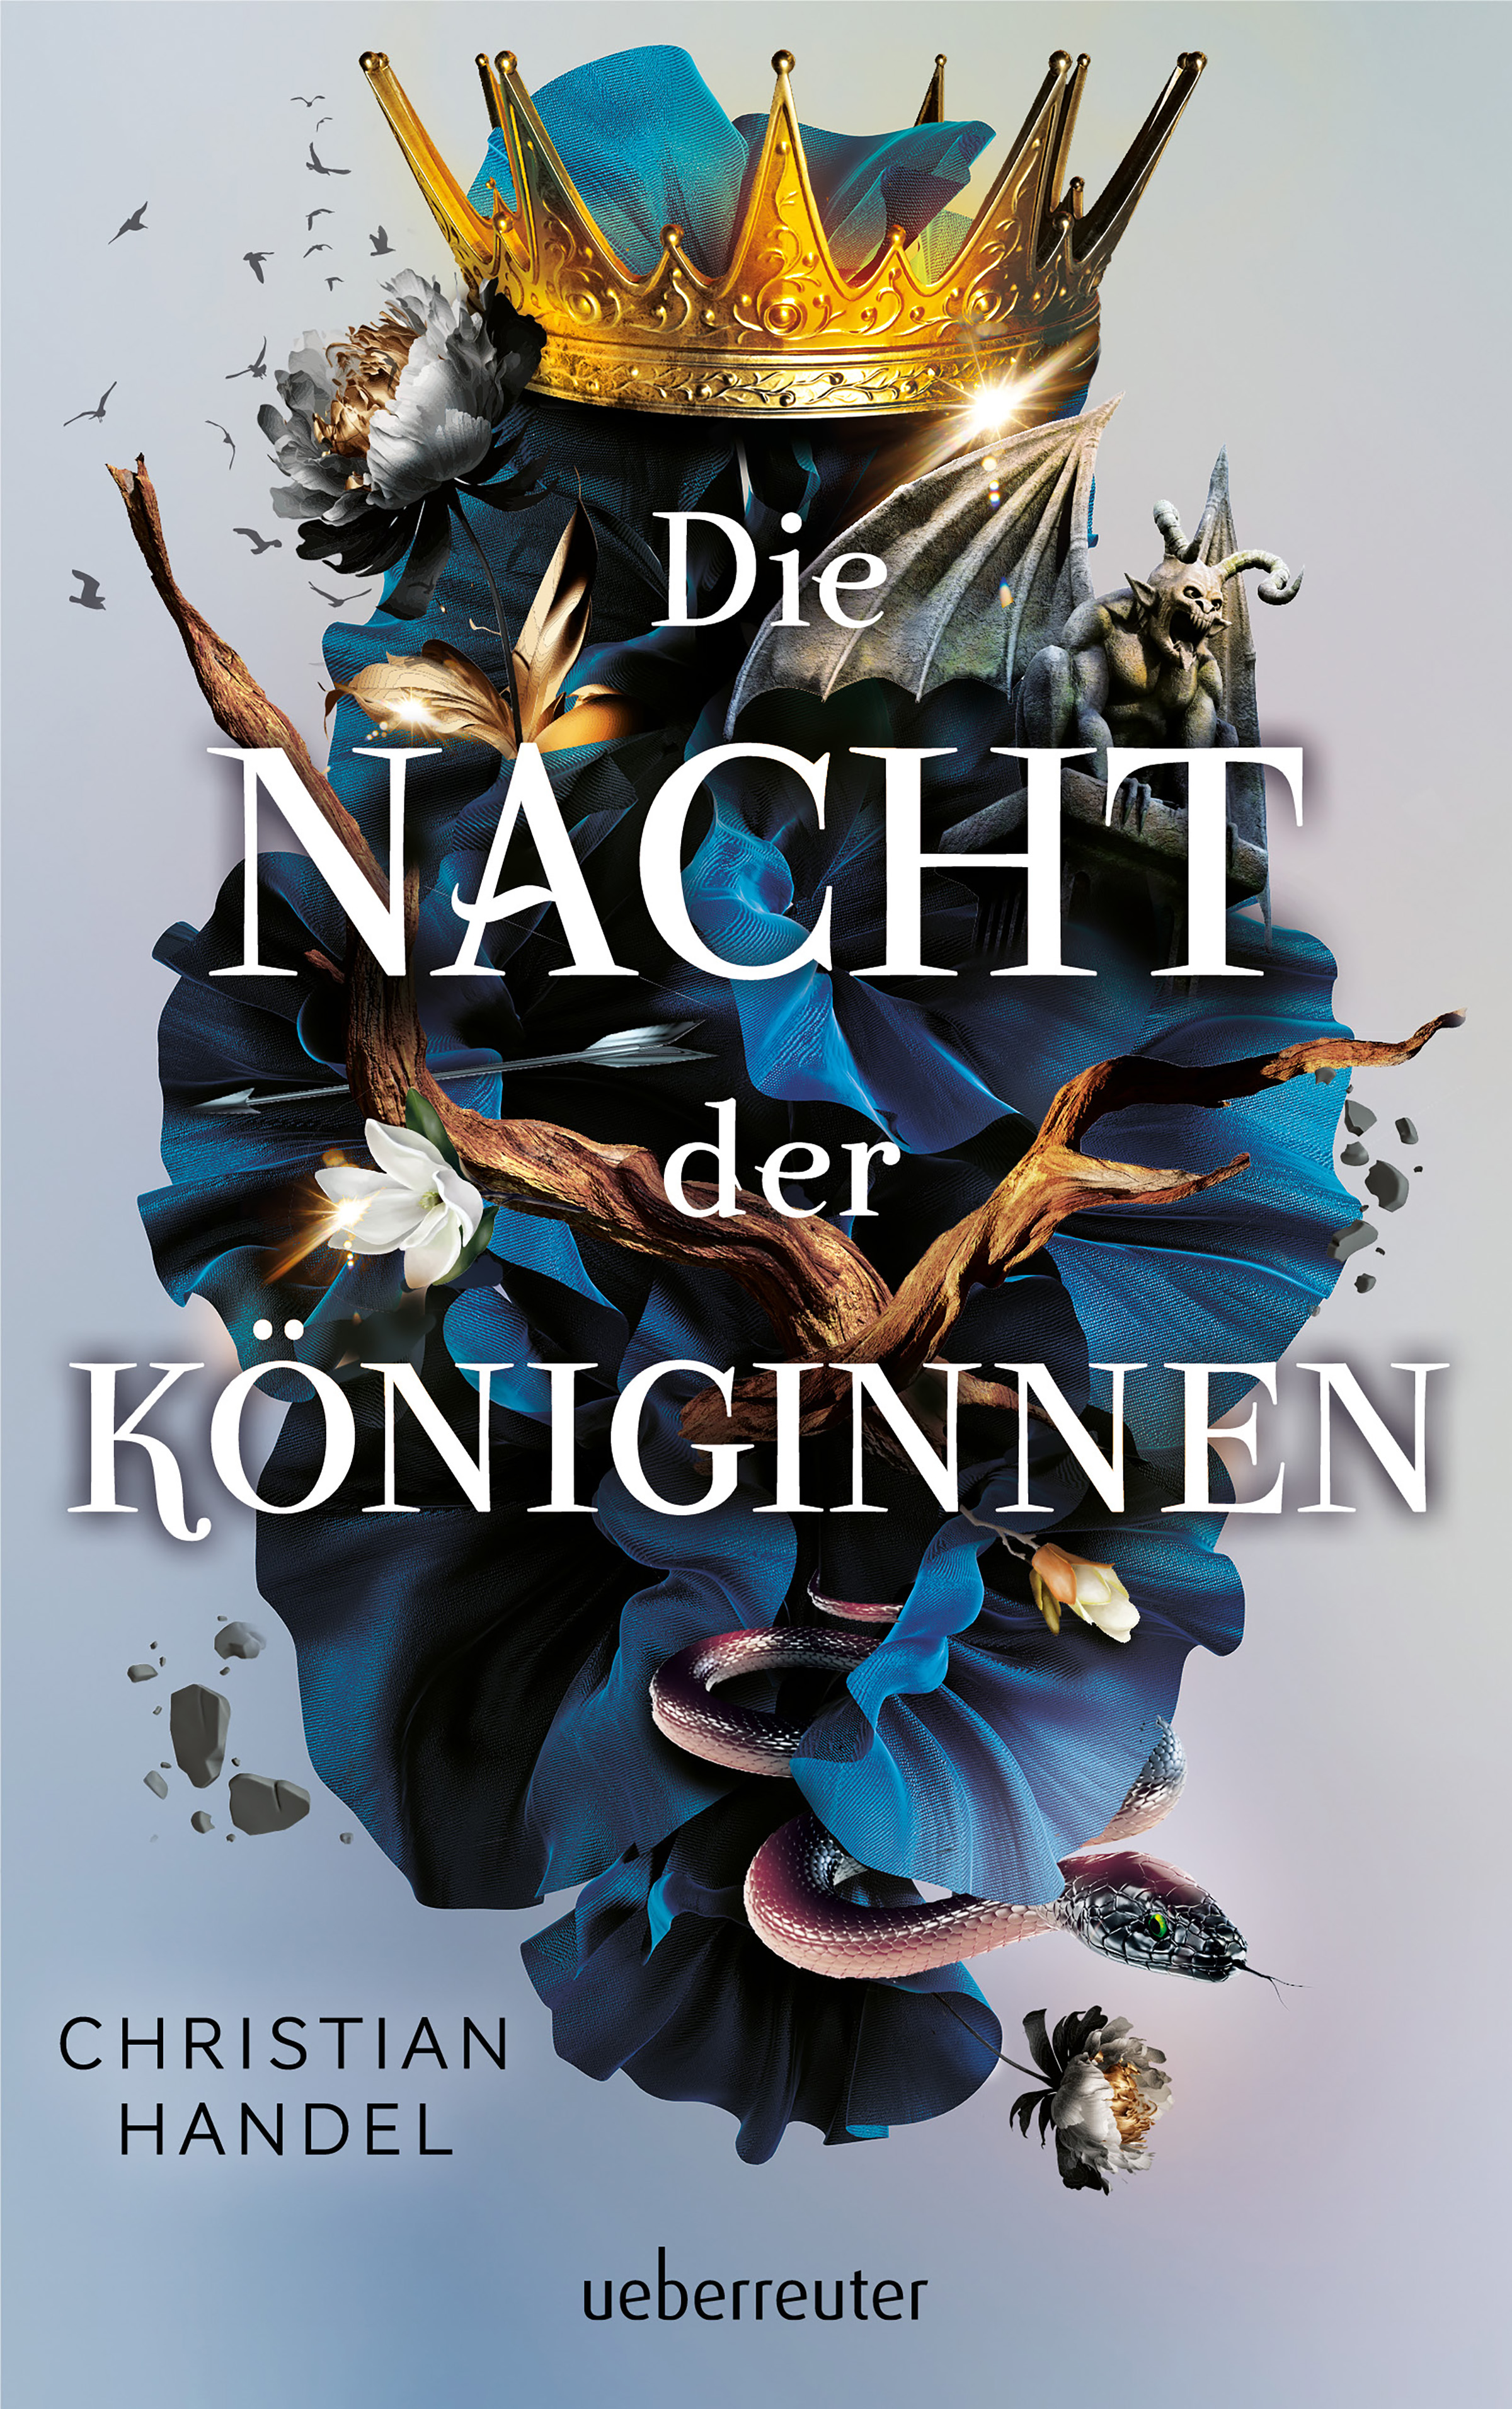 Bücherblog. Neuerscheinungen. Buchcover. Die Nacht der Königinnen von Christian Handel. Fantasy. Jugendbuch. ueberreuter.